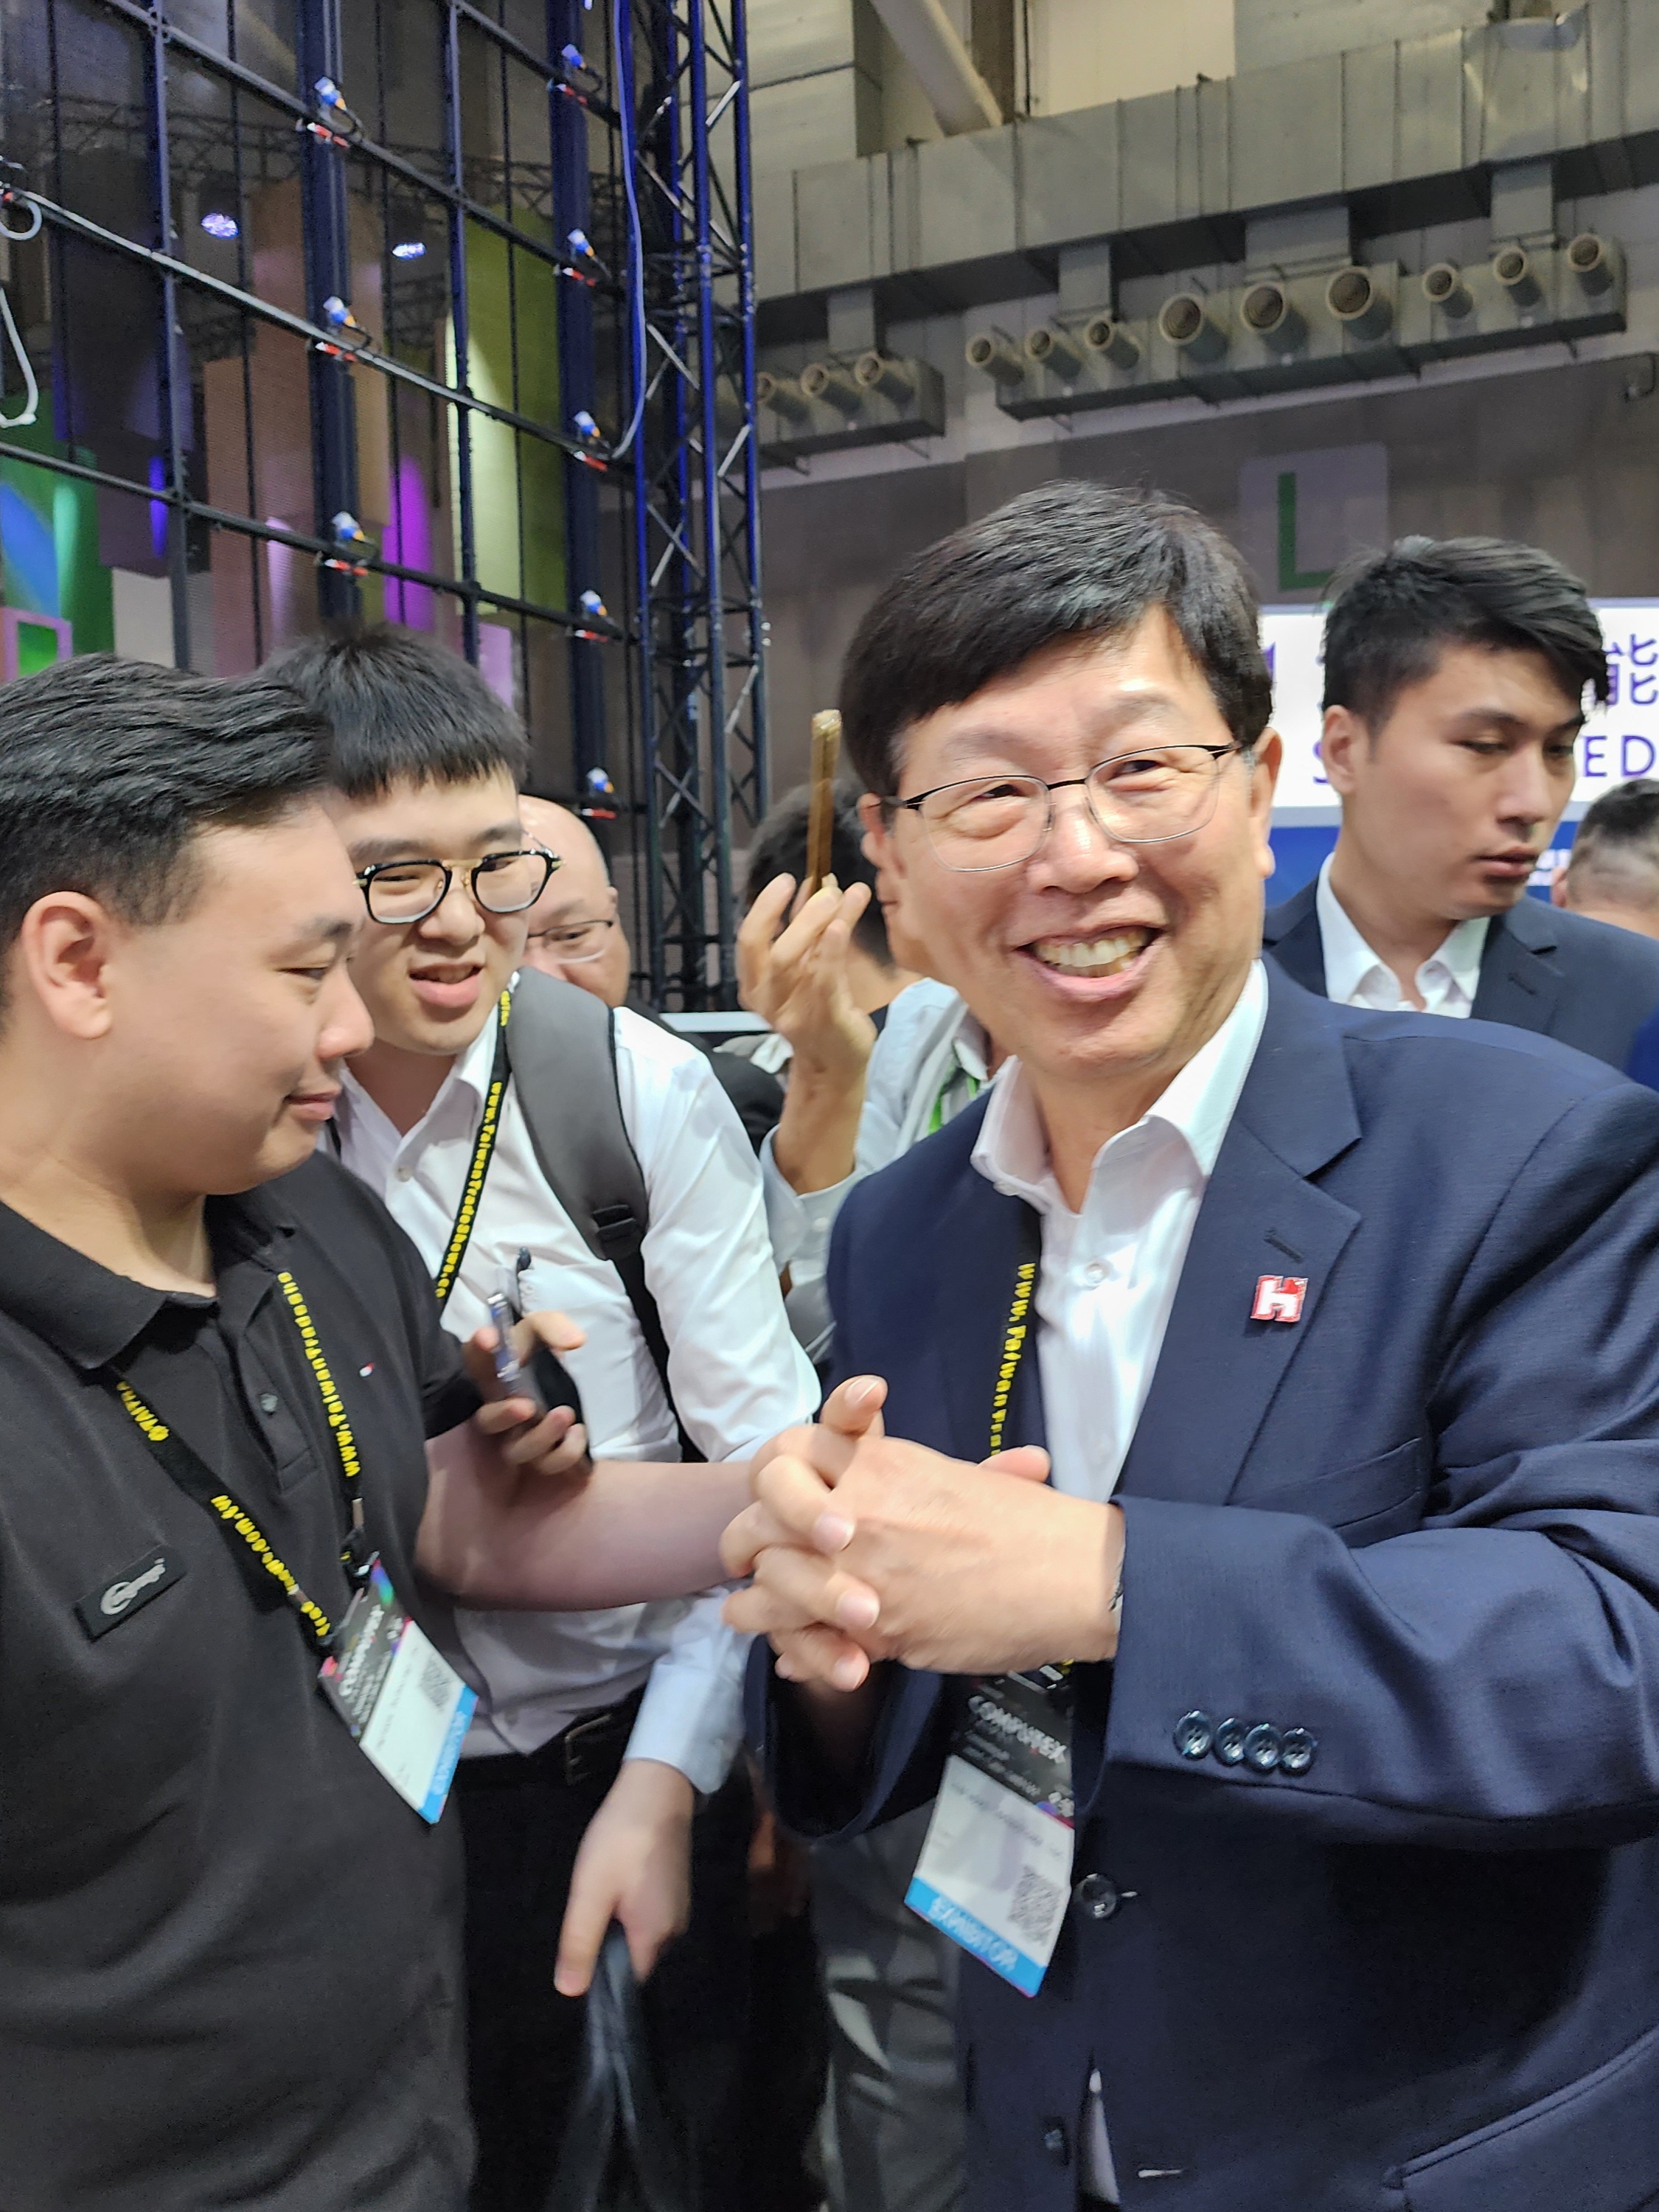 鸿海董事长刘扬伟（右）今宣布，鸿海将携手辉达在高雄软体园区建置以超级晶片GB200伺服器为核心的先进算力中心，总计共64柜、4608颗CPU，预计2026年完工。记者钟张涵／摄影